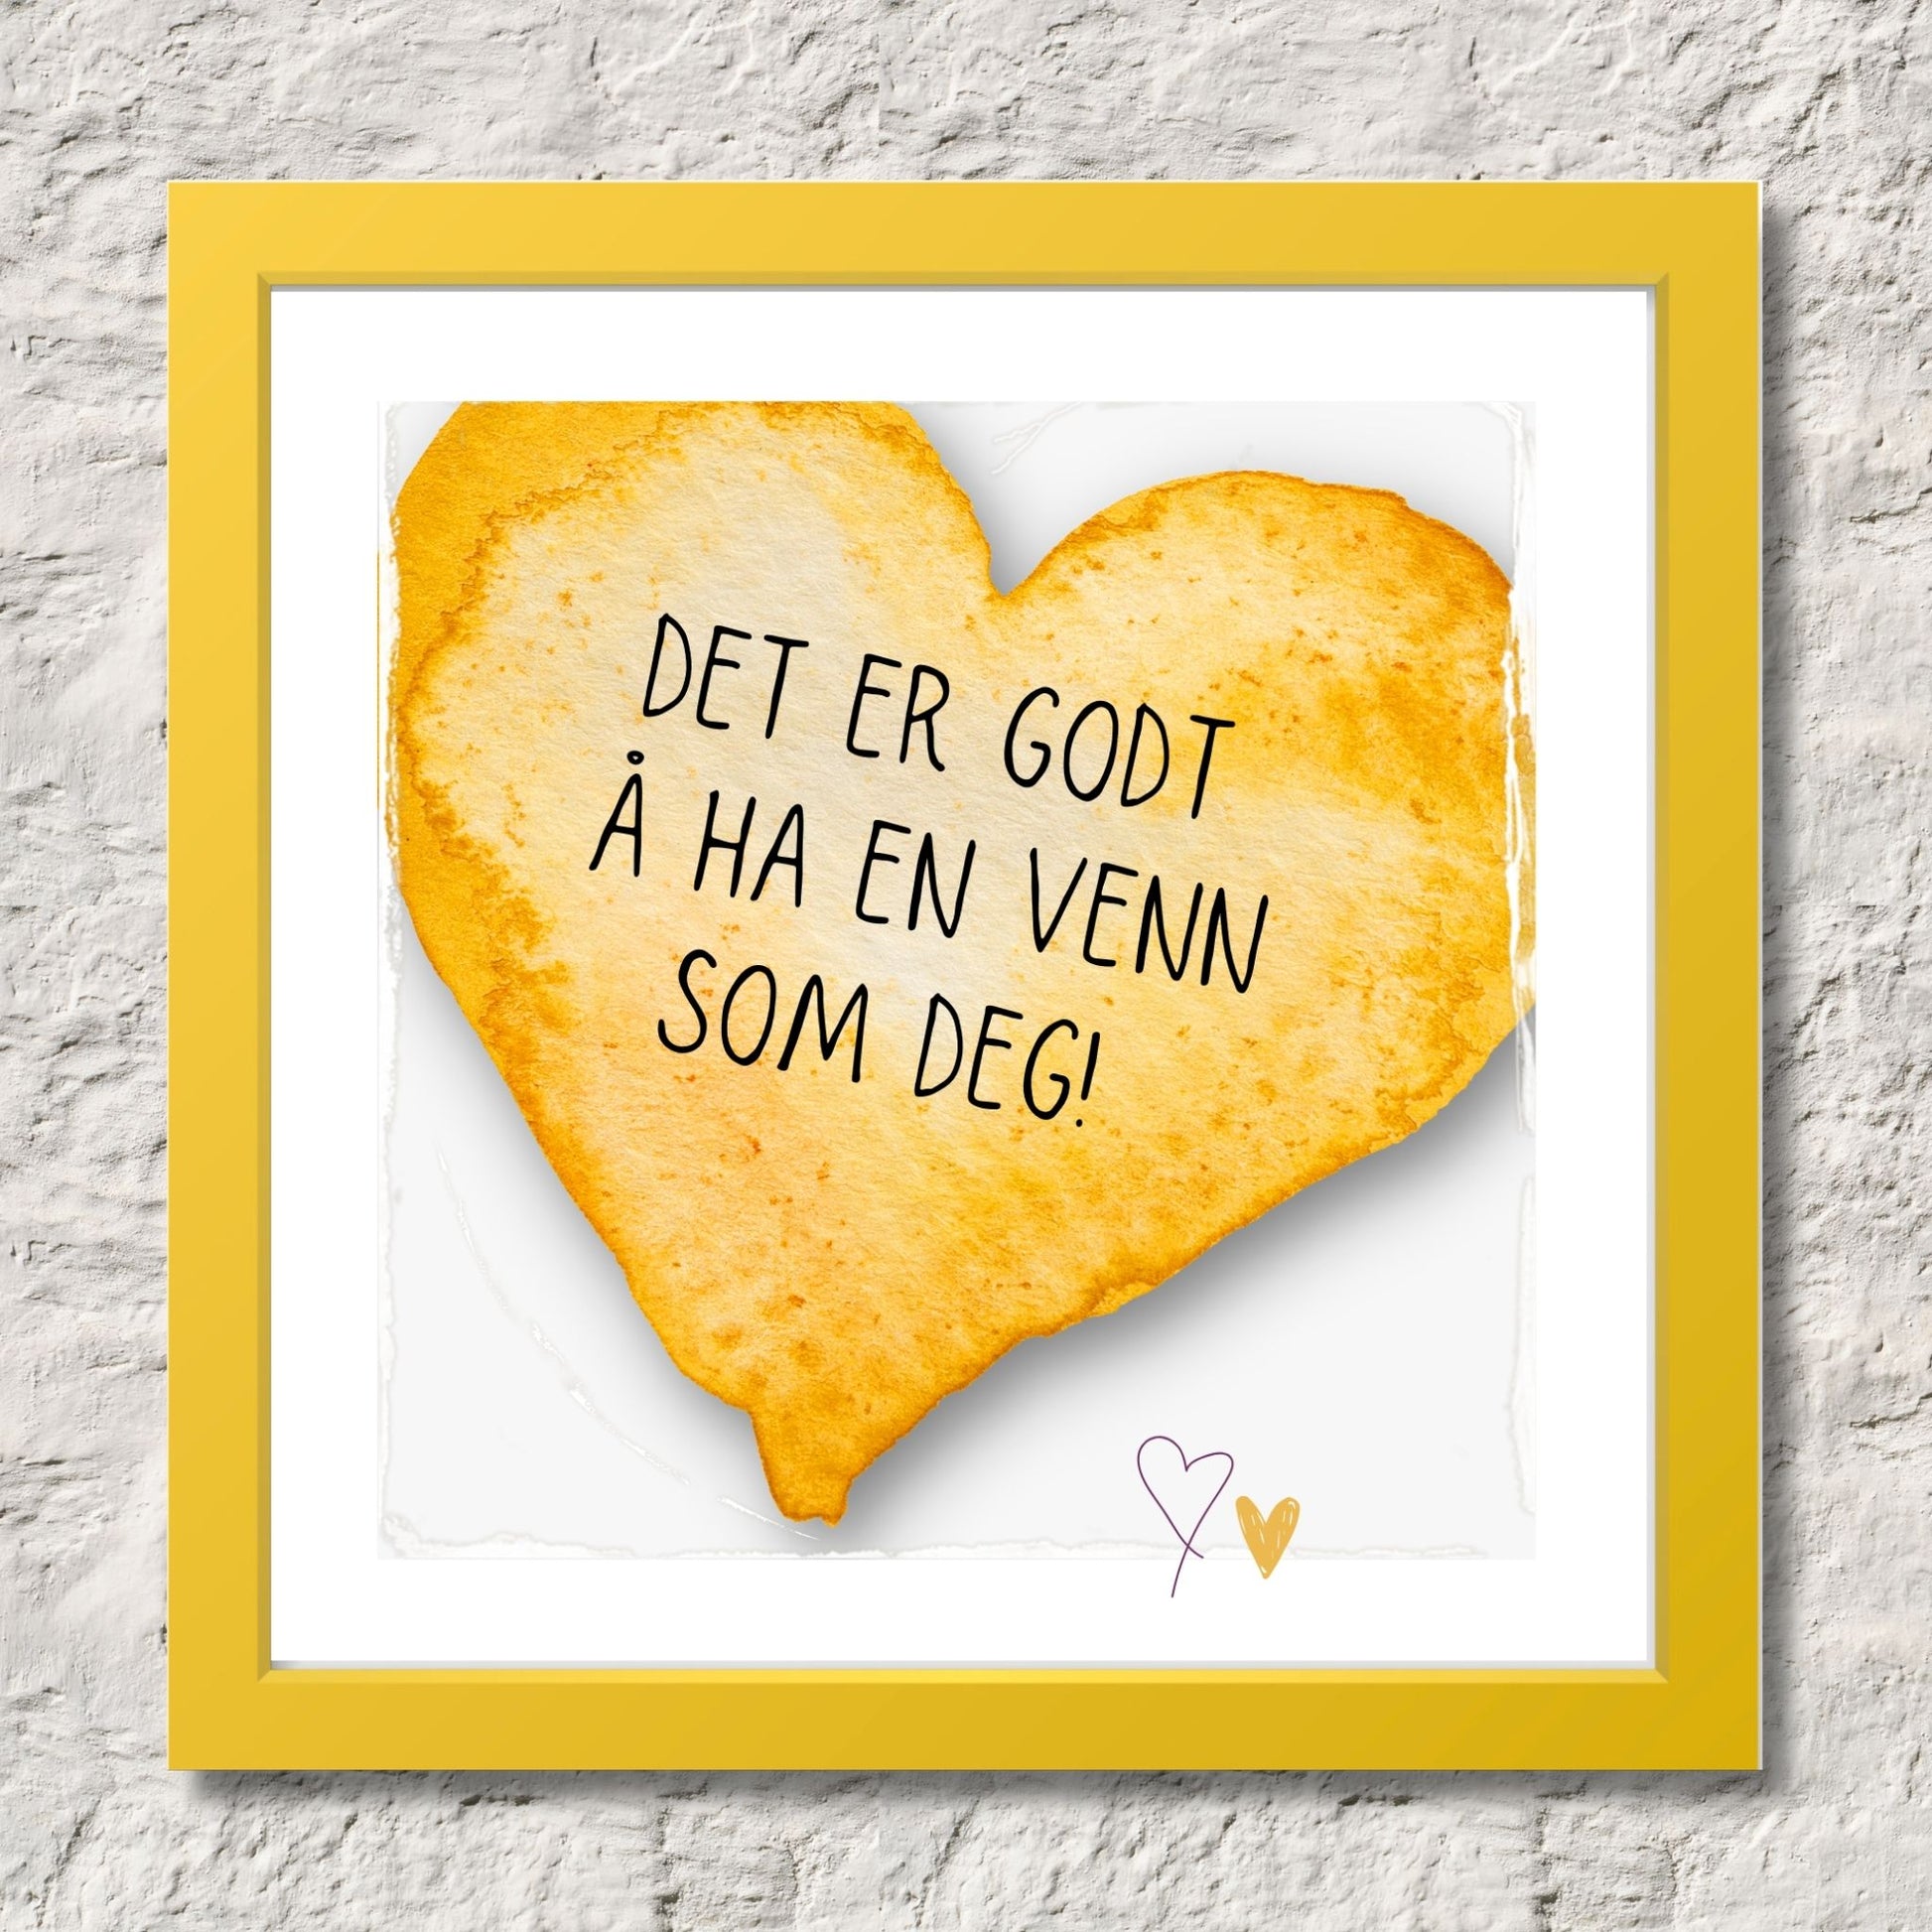 Plakat med lysegult hjerte og tekst "Det er godt å ha en venn som deg". Med hvit kant på 1,5 cm. Illustrasjon viser plakat i gul ramme.